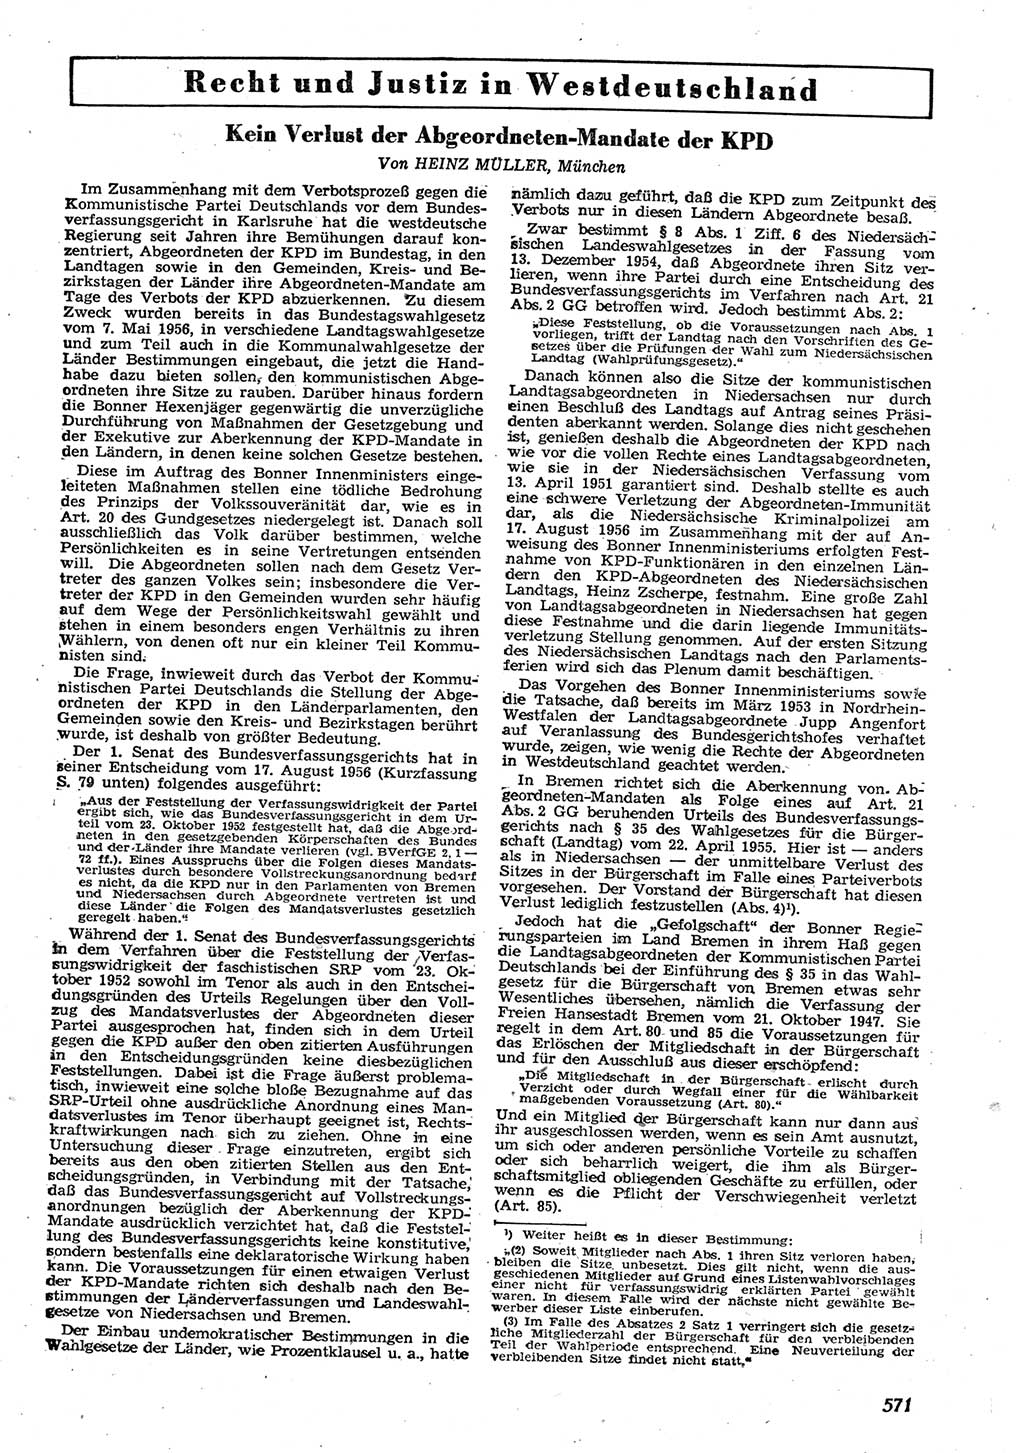 Neue Justiz (NJ), Zeitschrift für Recht und Rechtswissenschaft [Deutsche Demokratische Republik (DDR)], 10. Jahrgang 1956, Seite 571 (NJ DDR 1956, S. 571)